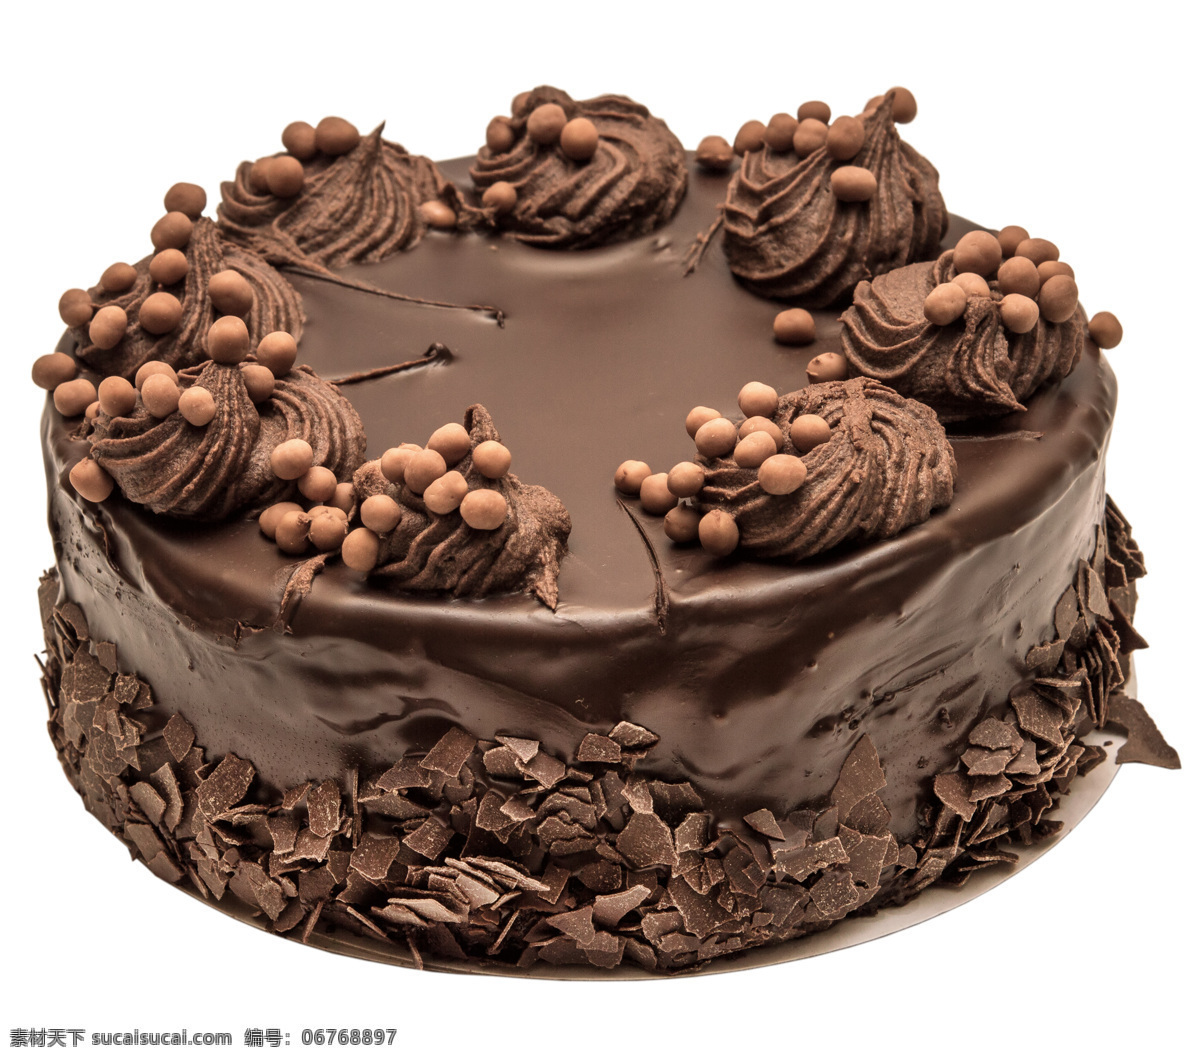 巧克力蛋糕 蛋糕 茶点 甜品 点心 蛋糕白底 草莓蛋糕 水果蛋糕 甜品图 蛋糕图 生日蛋糕 黑森林蛋糕 摄影图 餐饮美食 西餐美食